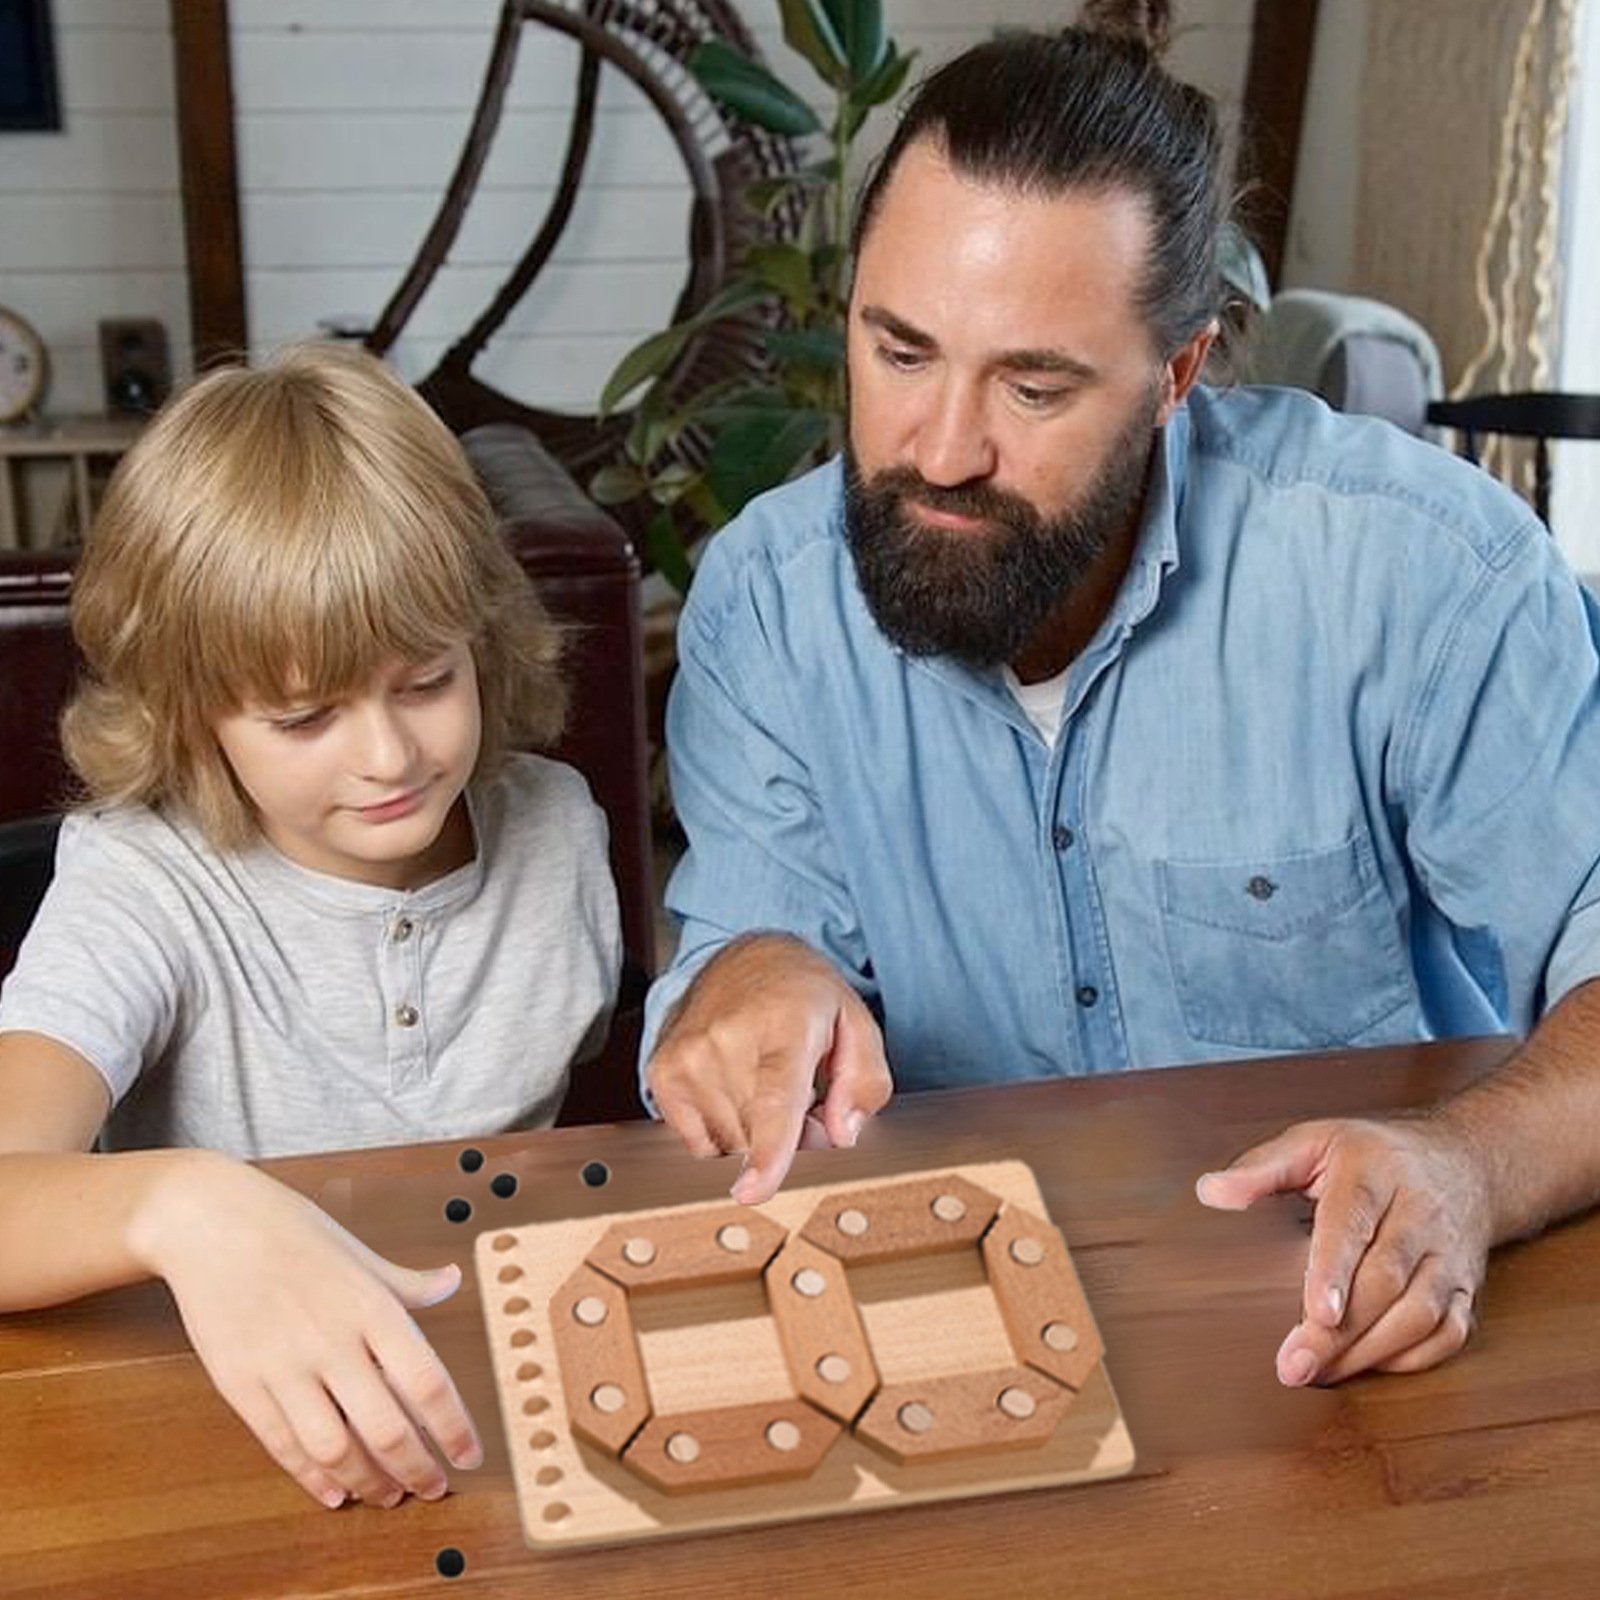 Dzieciństwo Montessori Edukacja Drewniana Puzzle Liczba